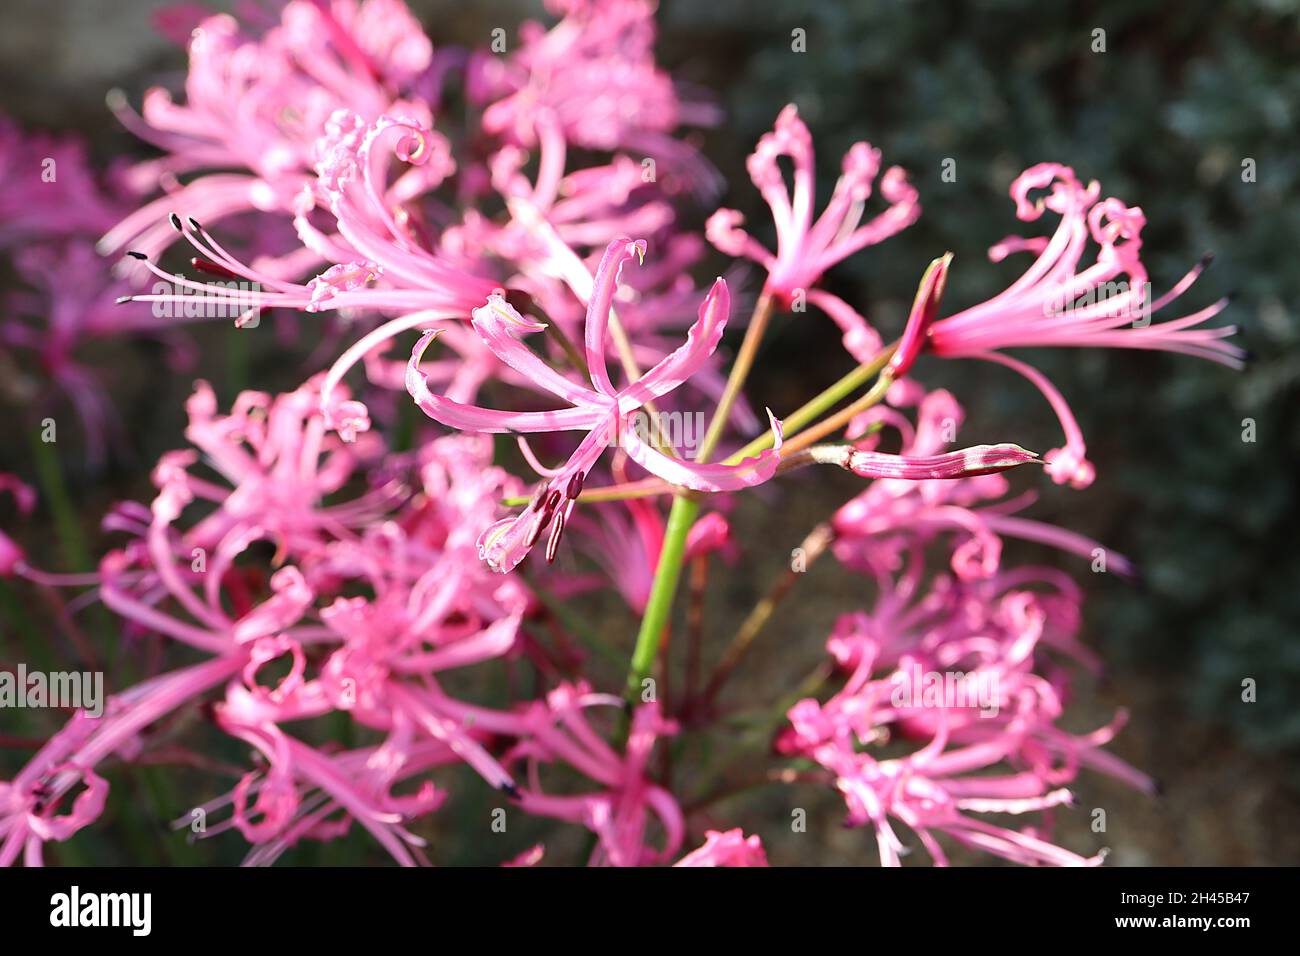 Nerine filamentosa naine naine avec des fleurs roses profondes avec des pétales de type threadlike, récurved et frilly marges, octobre, Angleterre, Royaume-Uni Banque D'Images